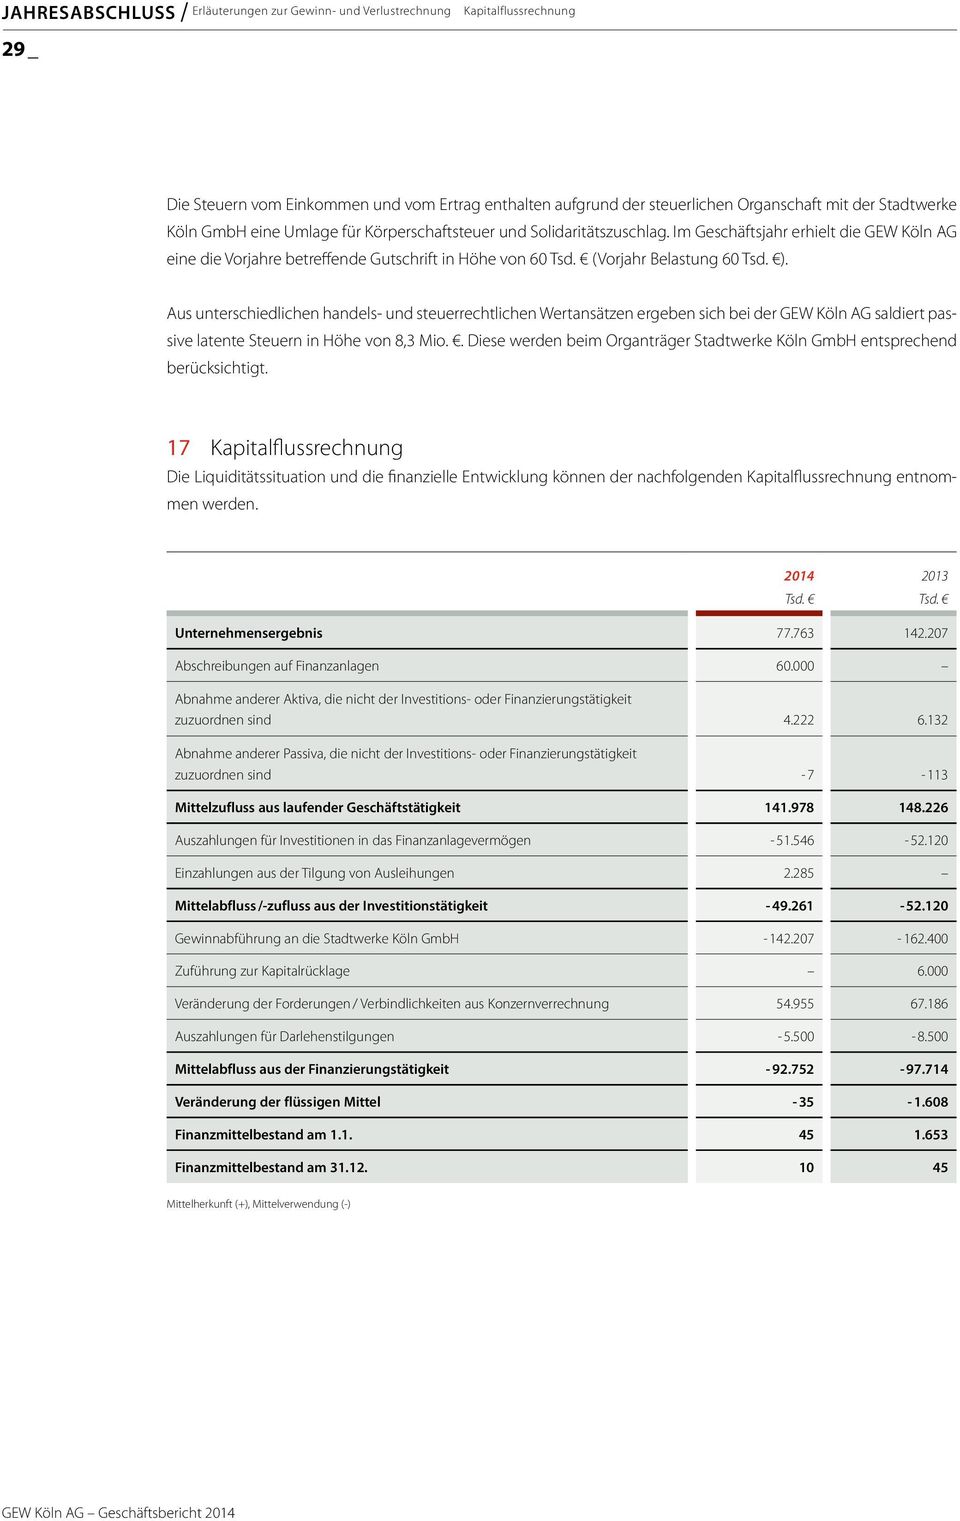 ). Aus unterschiedlichen handels- und steuerrechtlichen Wertansätzen ergeben sich bei der GEW Köln AG saldiert passive latente Steuern in Höhe von 8,3 Mio.